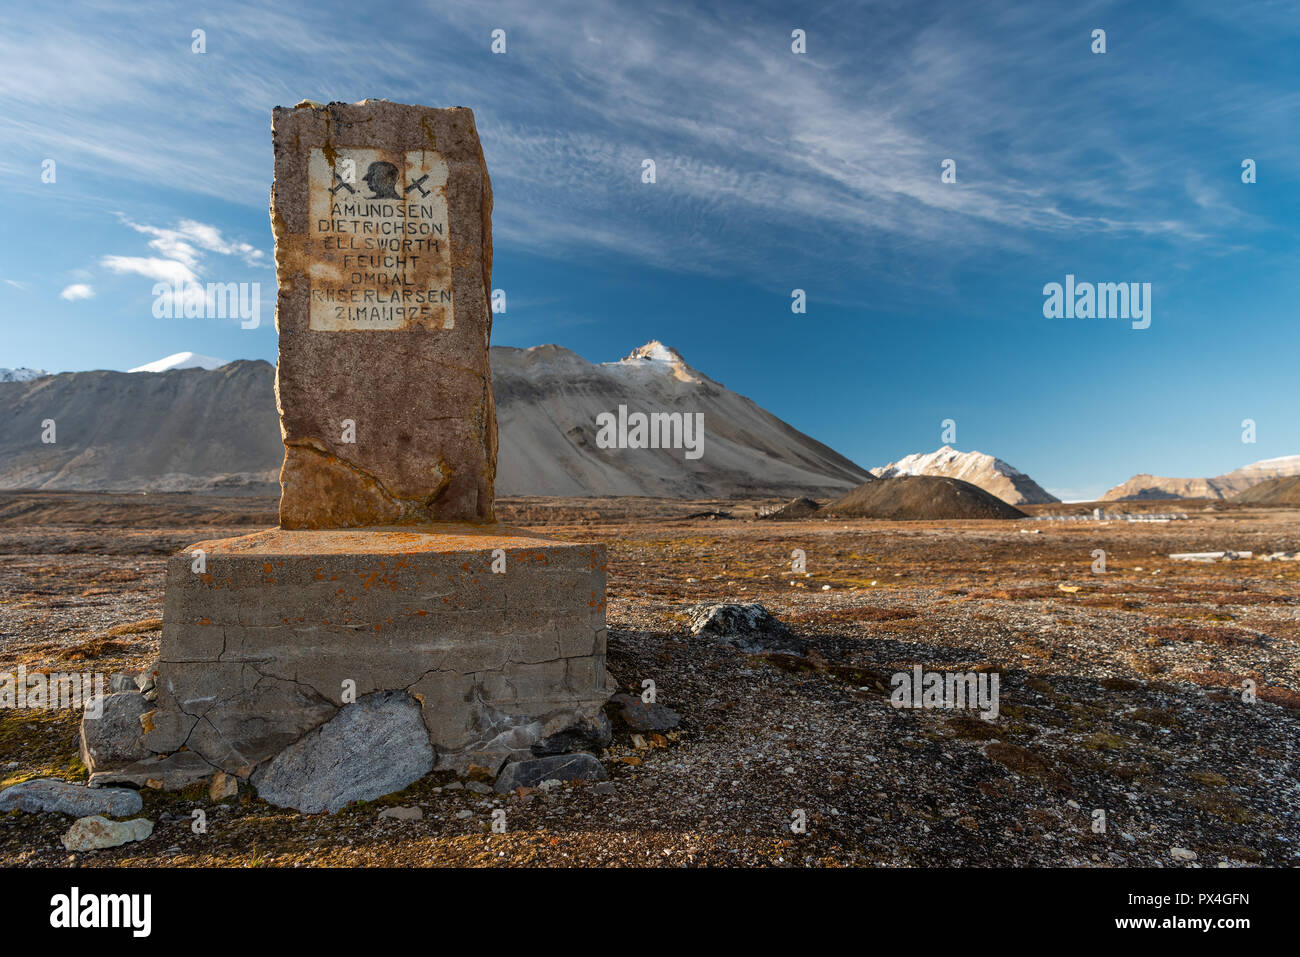 Gedenkstein für Amundsen-Ellsworth Nordpol Flugzeug Expedition, Ny-Ålesund, Spitzbergen Island, Spitzbergen Archipel Stockfoto